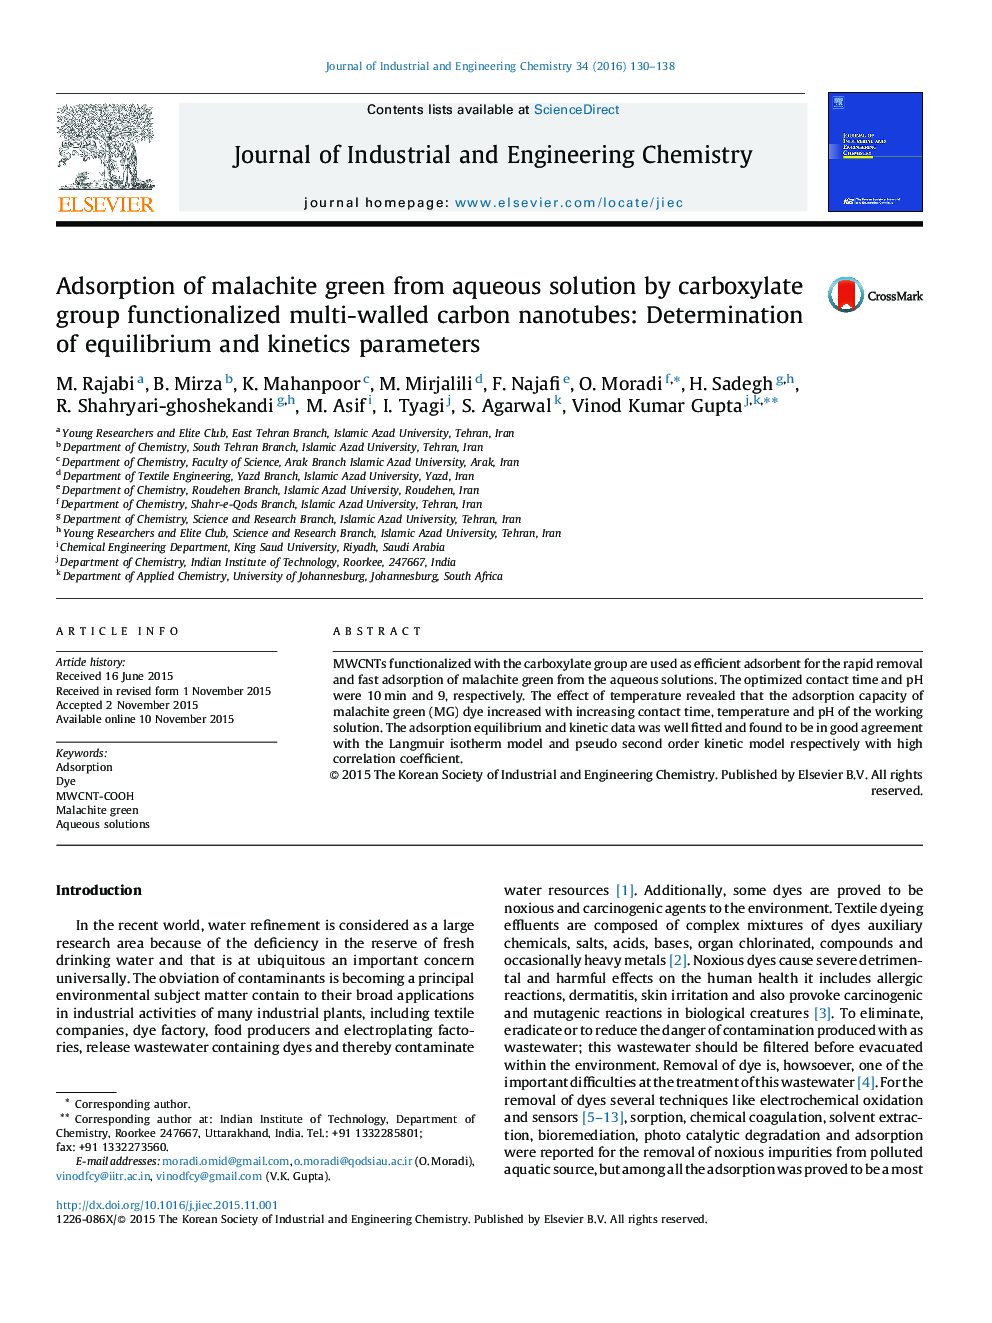 جذب گلوله مالاکیتی از محلول های آبی توسط گروه کربوکسیلات نانولوله های کربنی چند جداره کاربردی: تعیین پارامترهای تعادلی و سینتیکی 